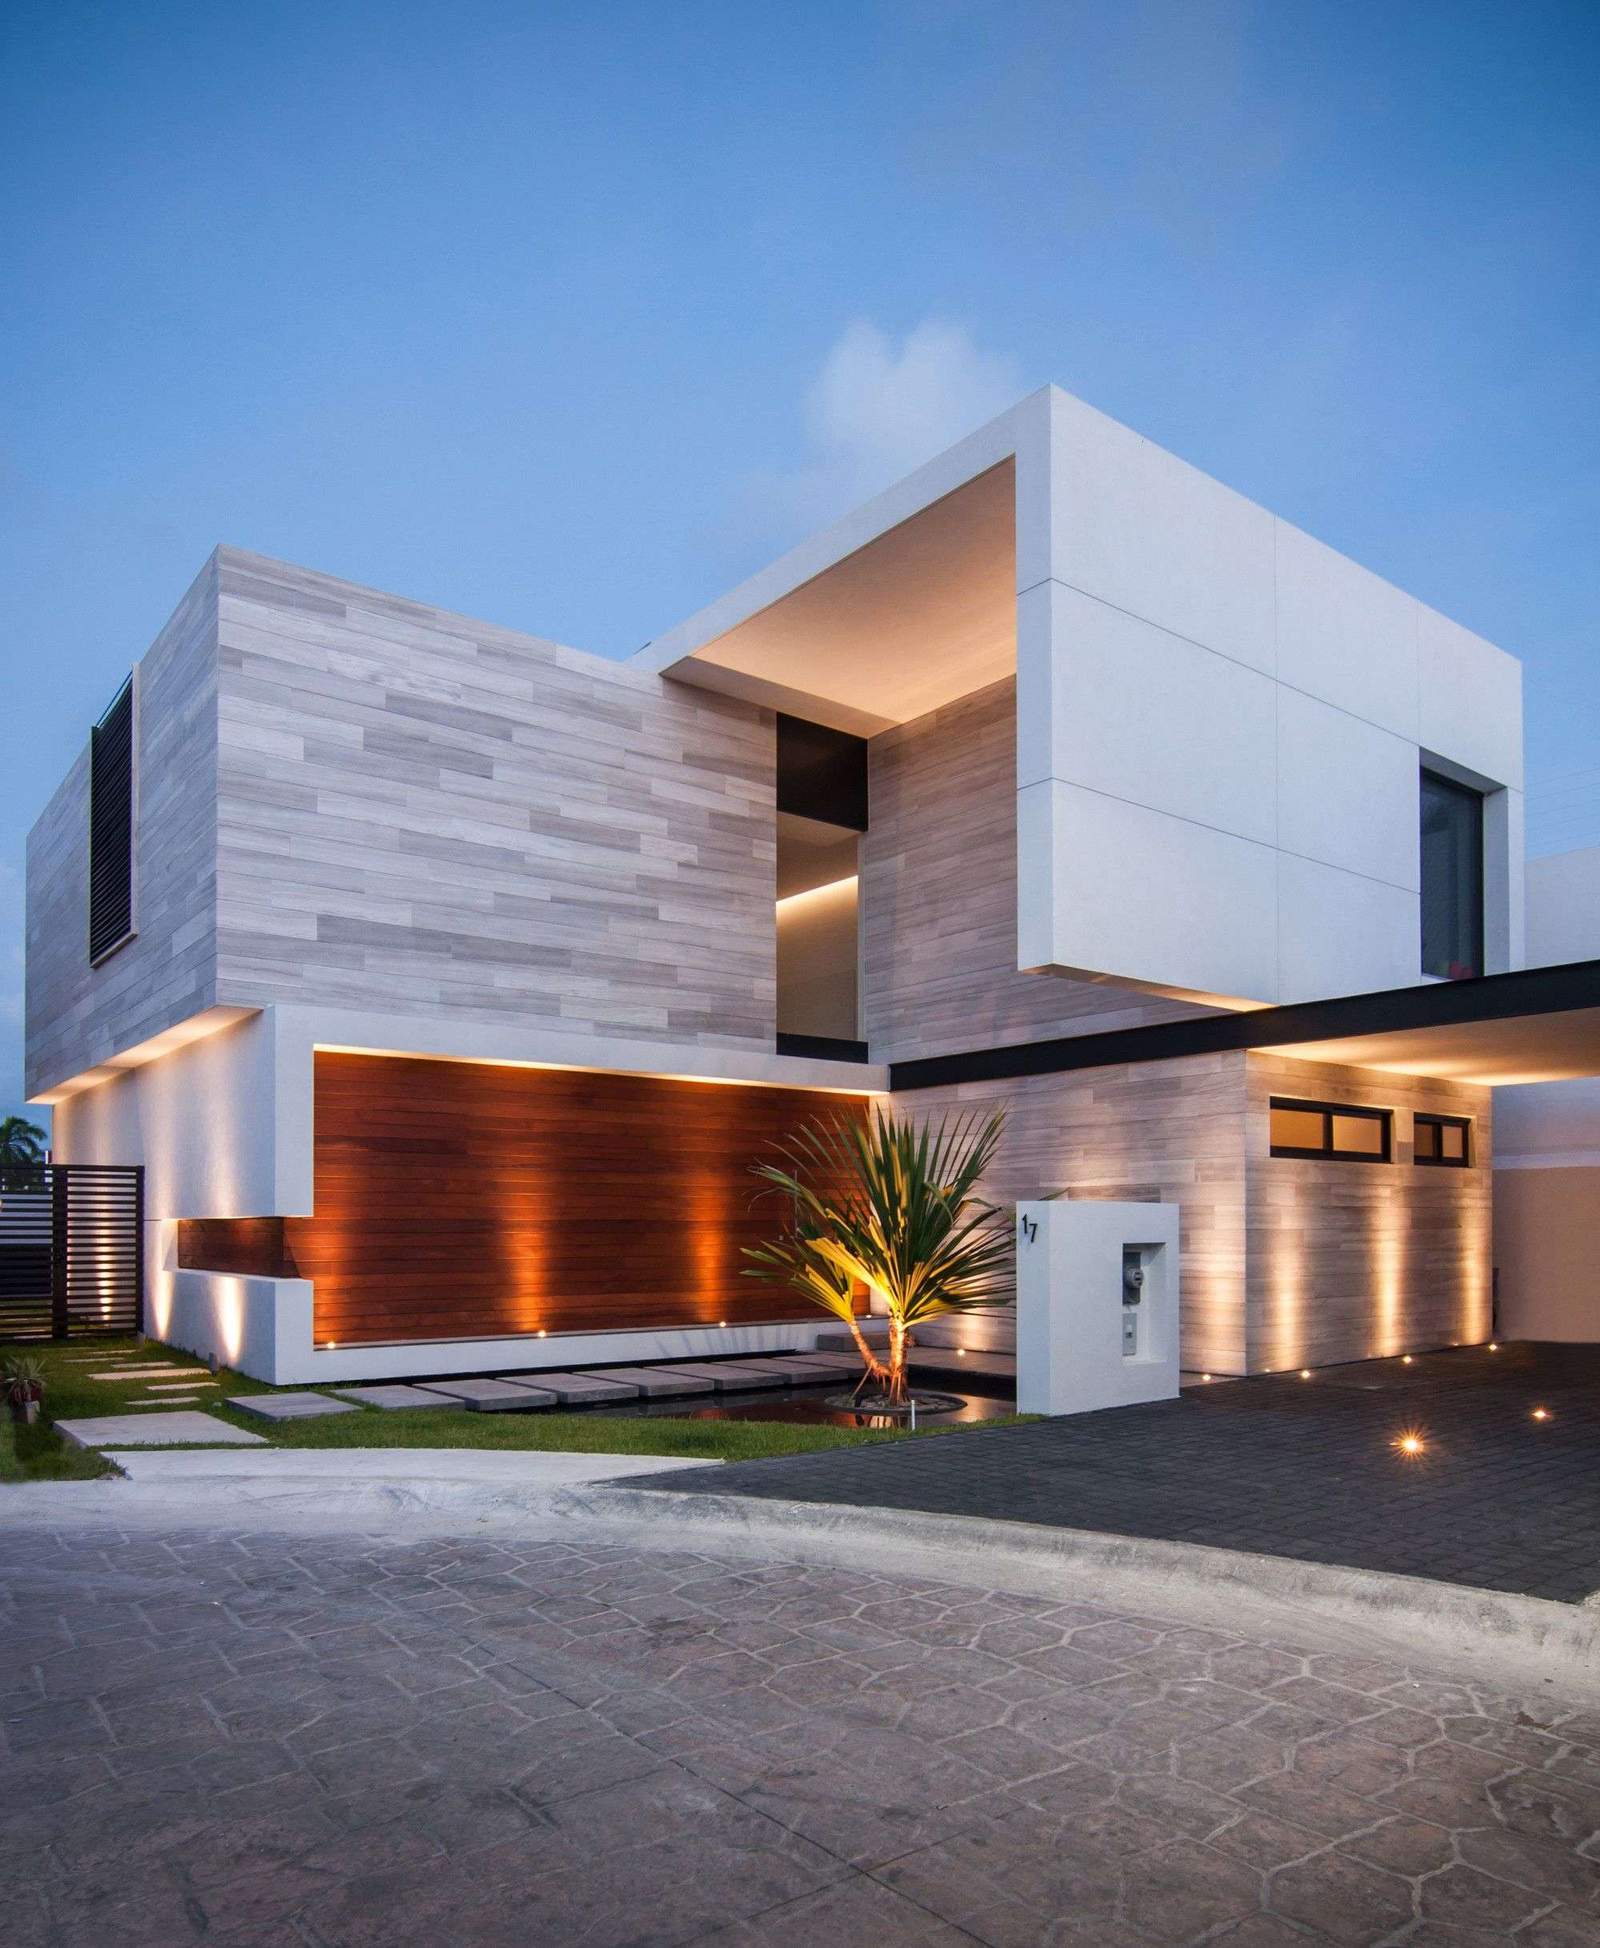 Construido por TAFF Arquitectos en Cancún, Mexico con fecha 2014. Imagenes por Wacho Espinosa.…